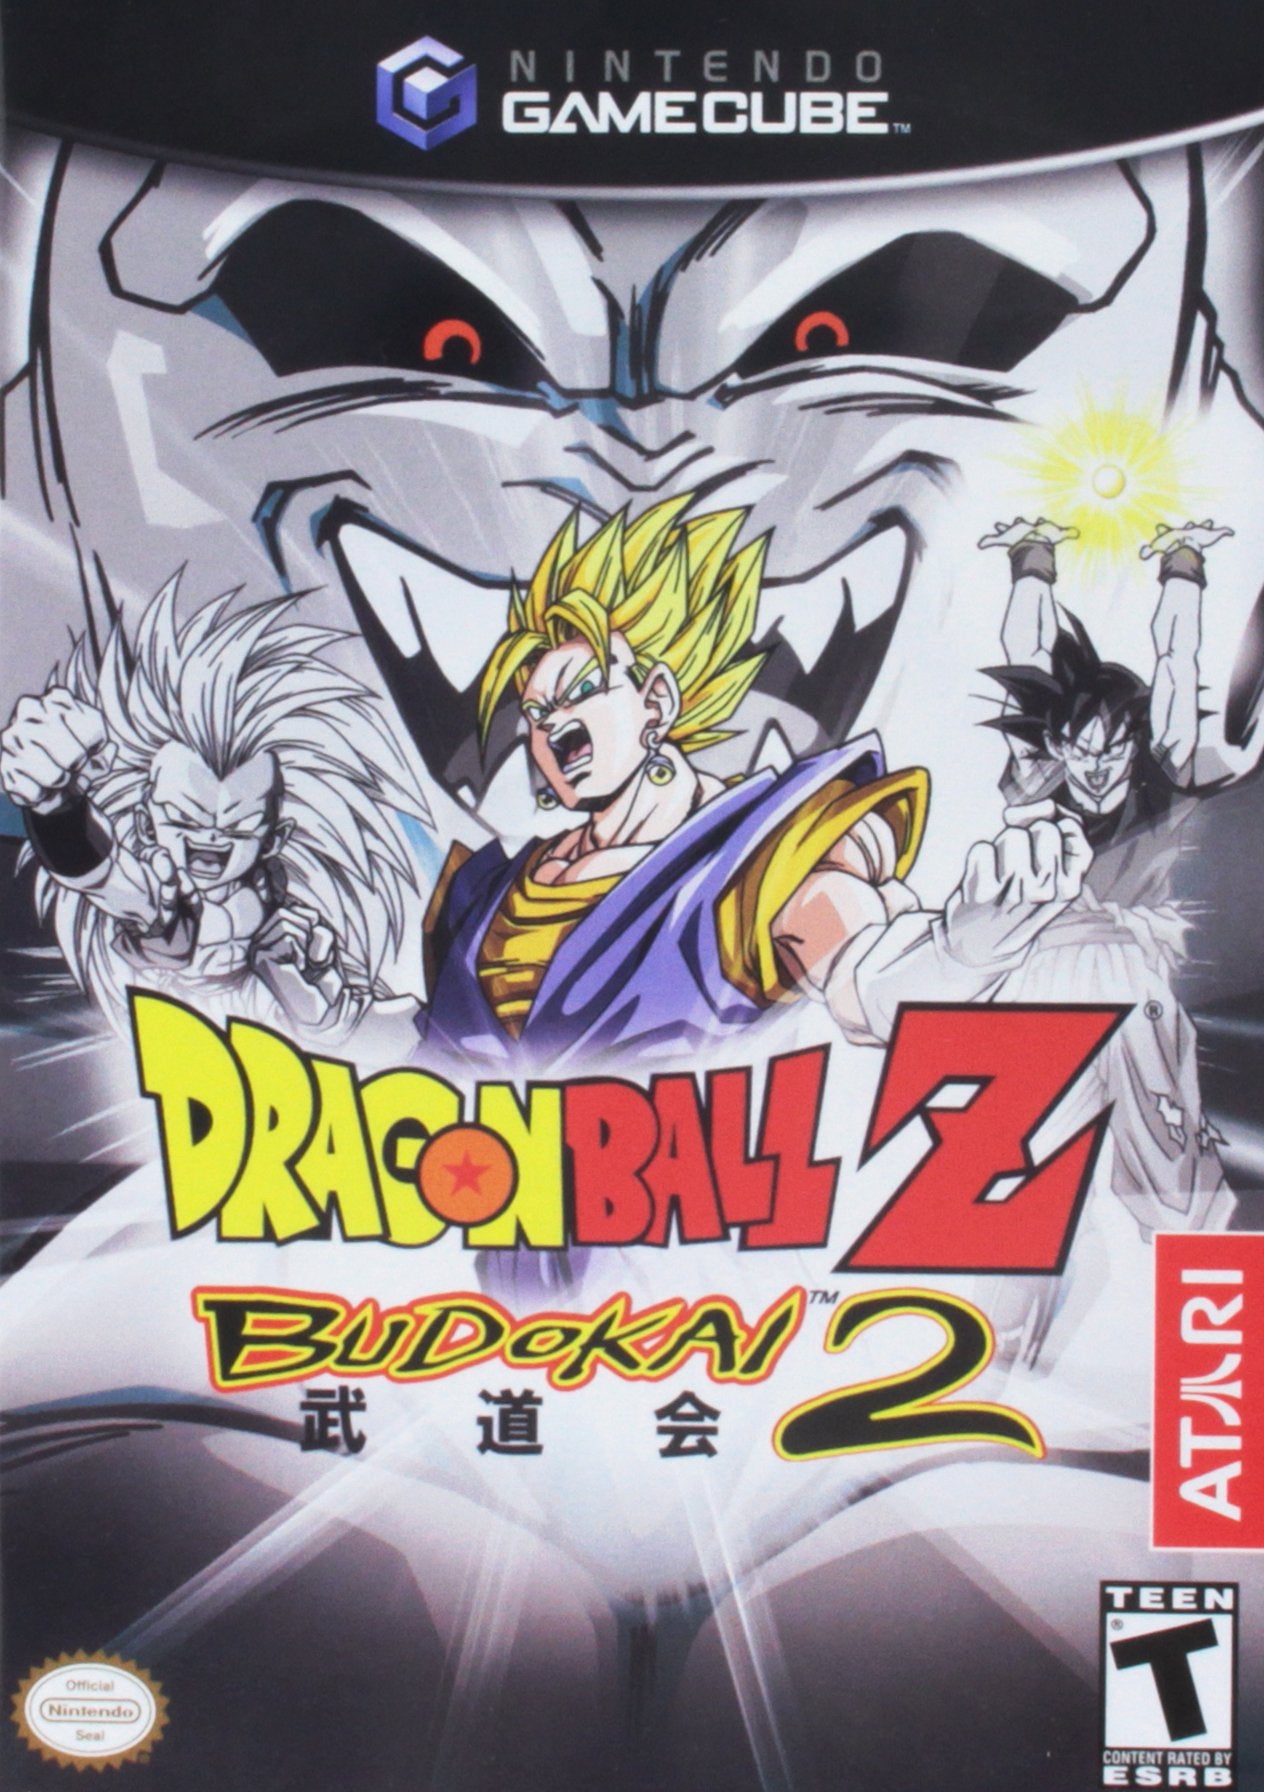 Dragon Ball Z Budokai 2 - Nintendo GameCube